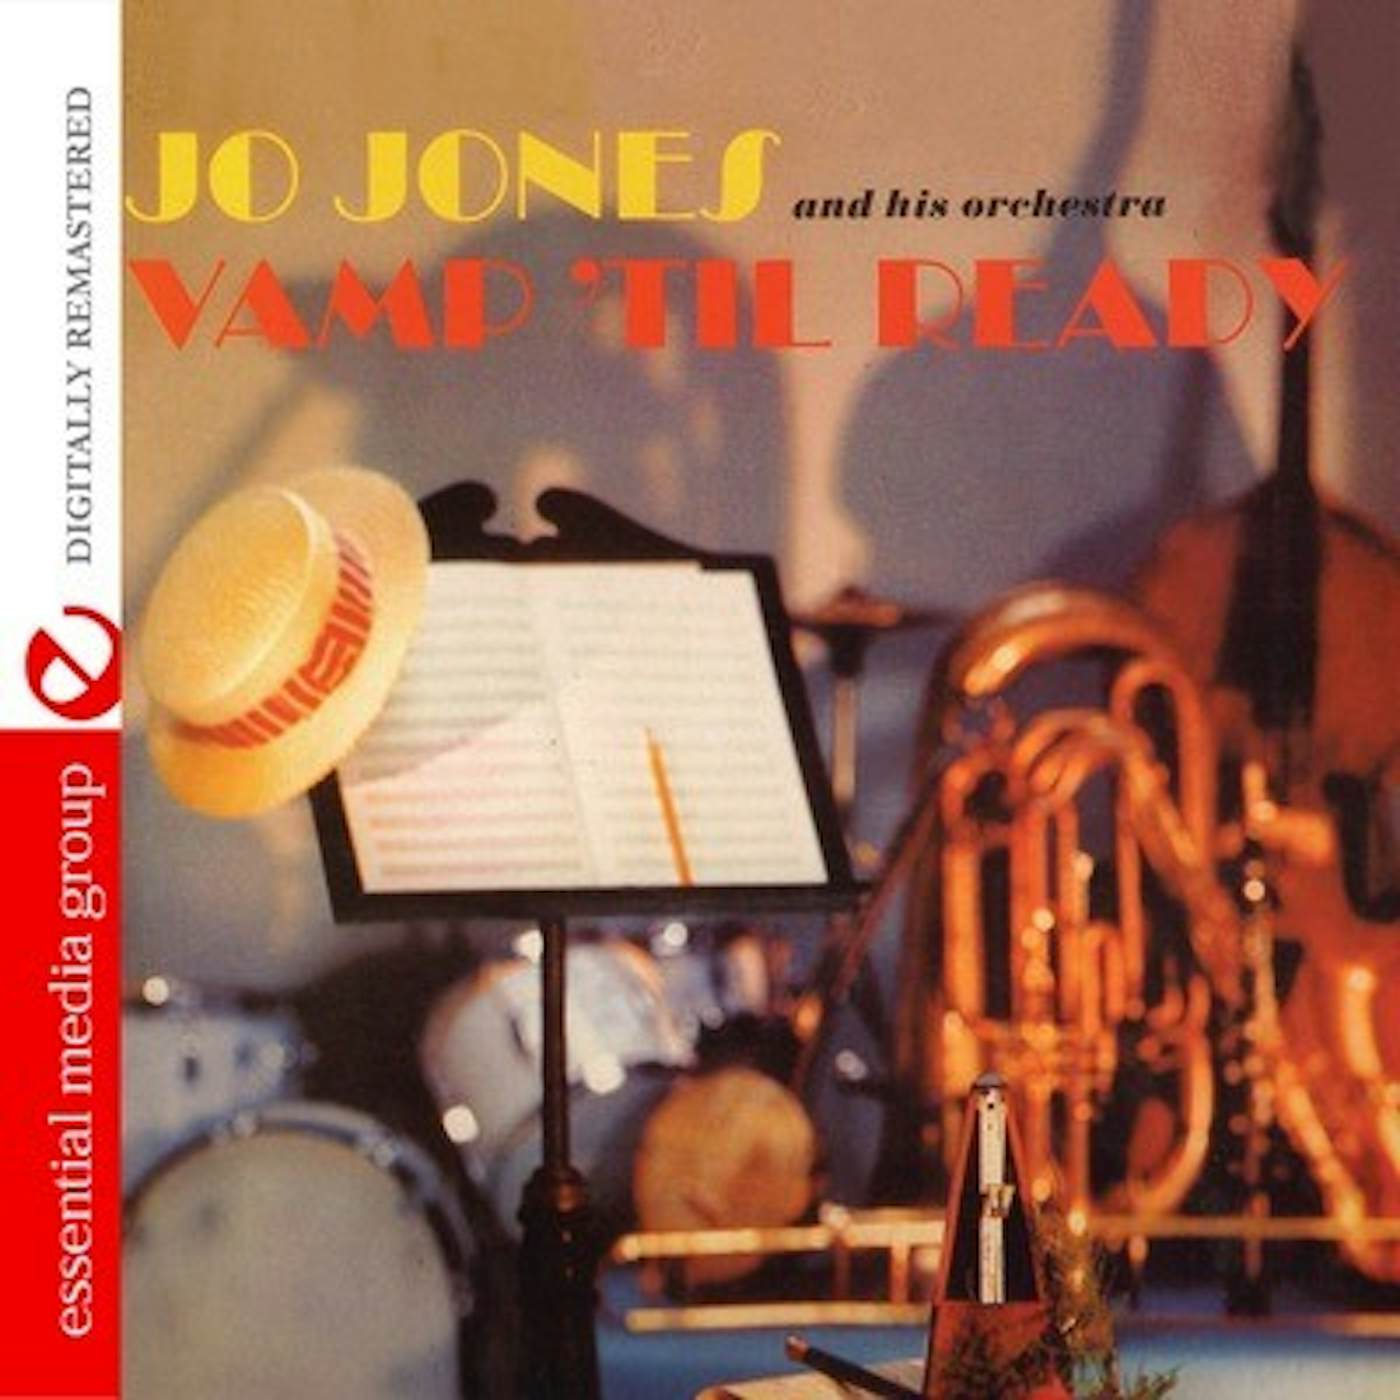 Jo Jones VAMP 'TIL READY CD